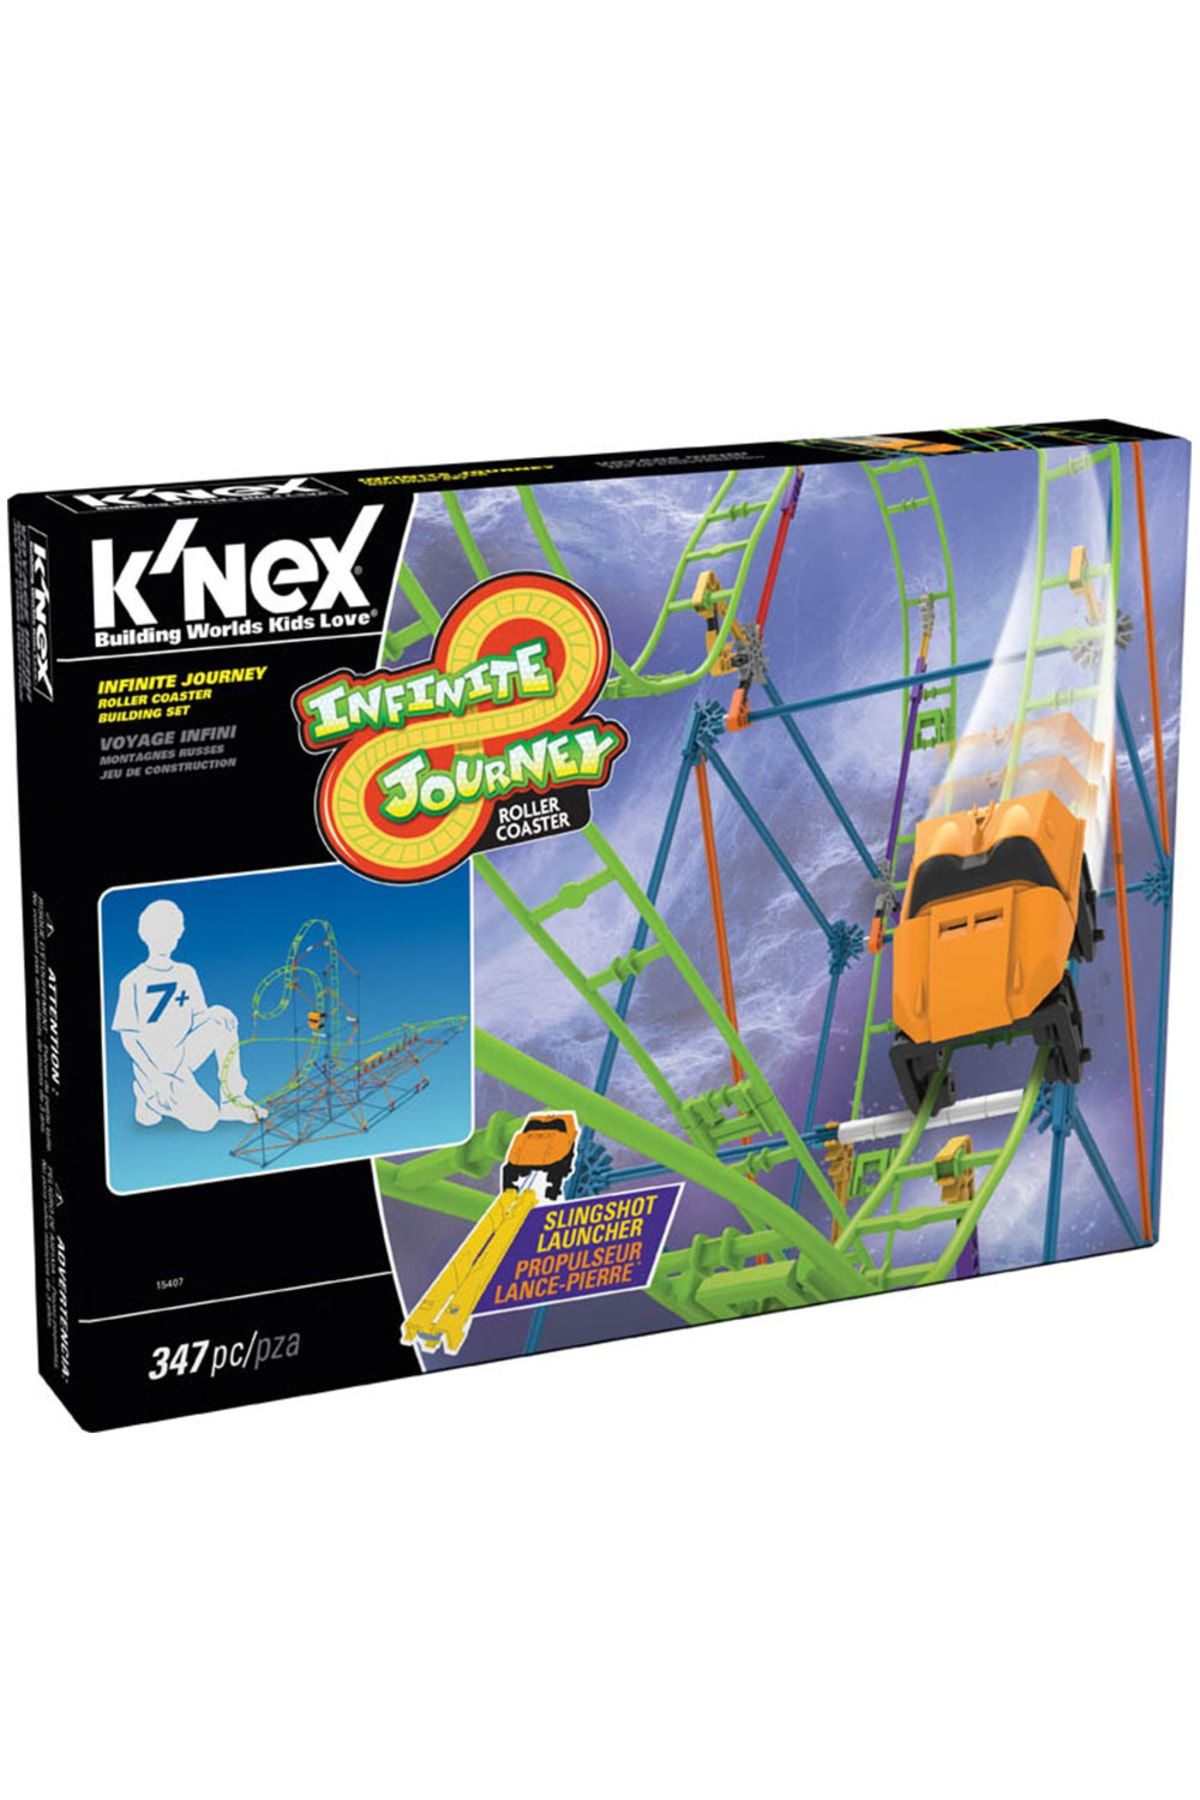 Knex K Nex Infinite Journey Roller Coaster Seti Thrill Rides 1540